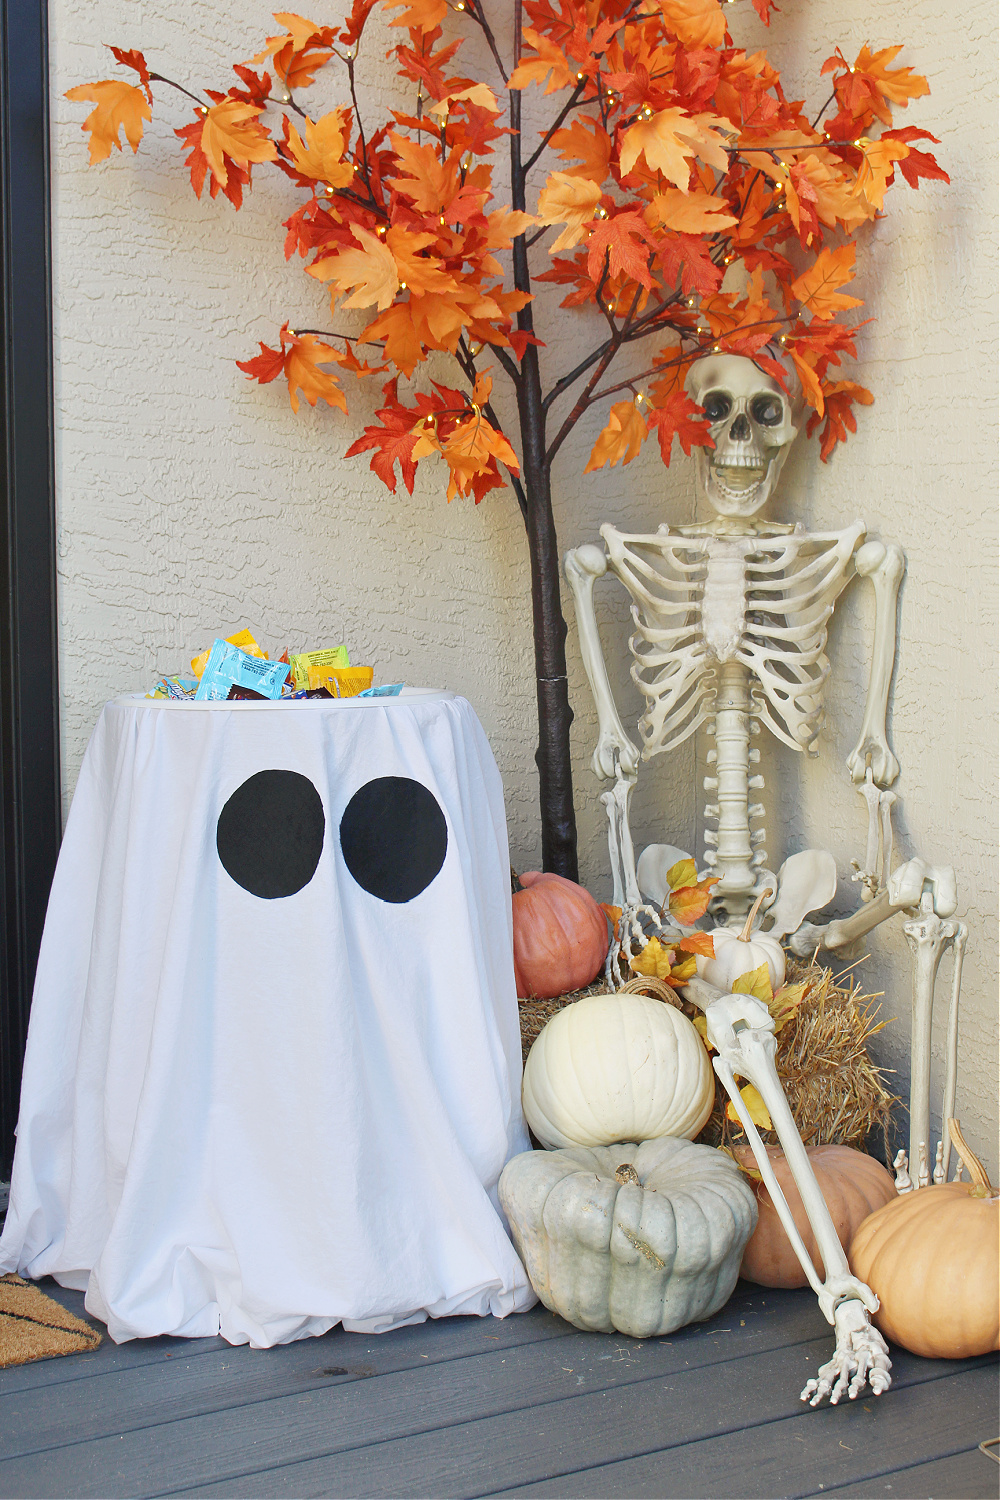 Suporte de doces de Halloween fantasma em uma varanda decorada para o Halloween.